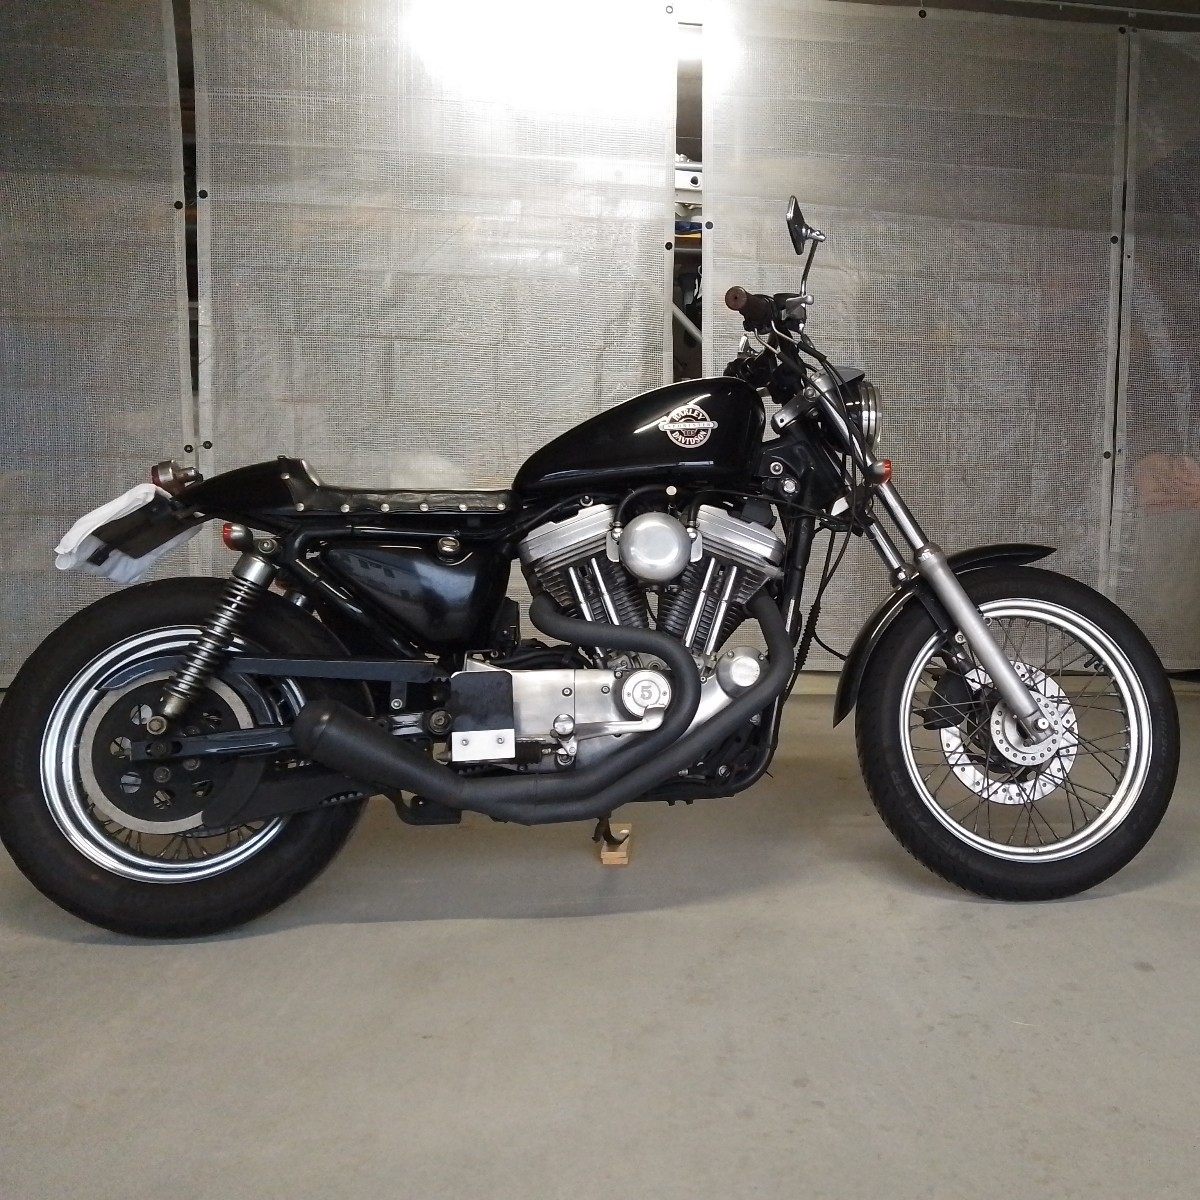 (再出品)’02スポーツスター XLH883 キャブ車 ワンオーナー 構造変更済 Harley-Davidson ハーレー Sportstar nice!motorcycle _画像1